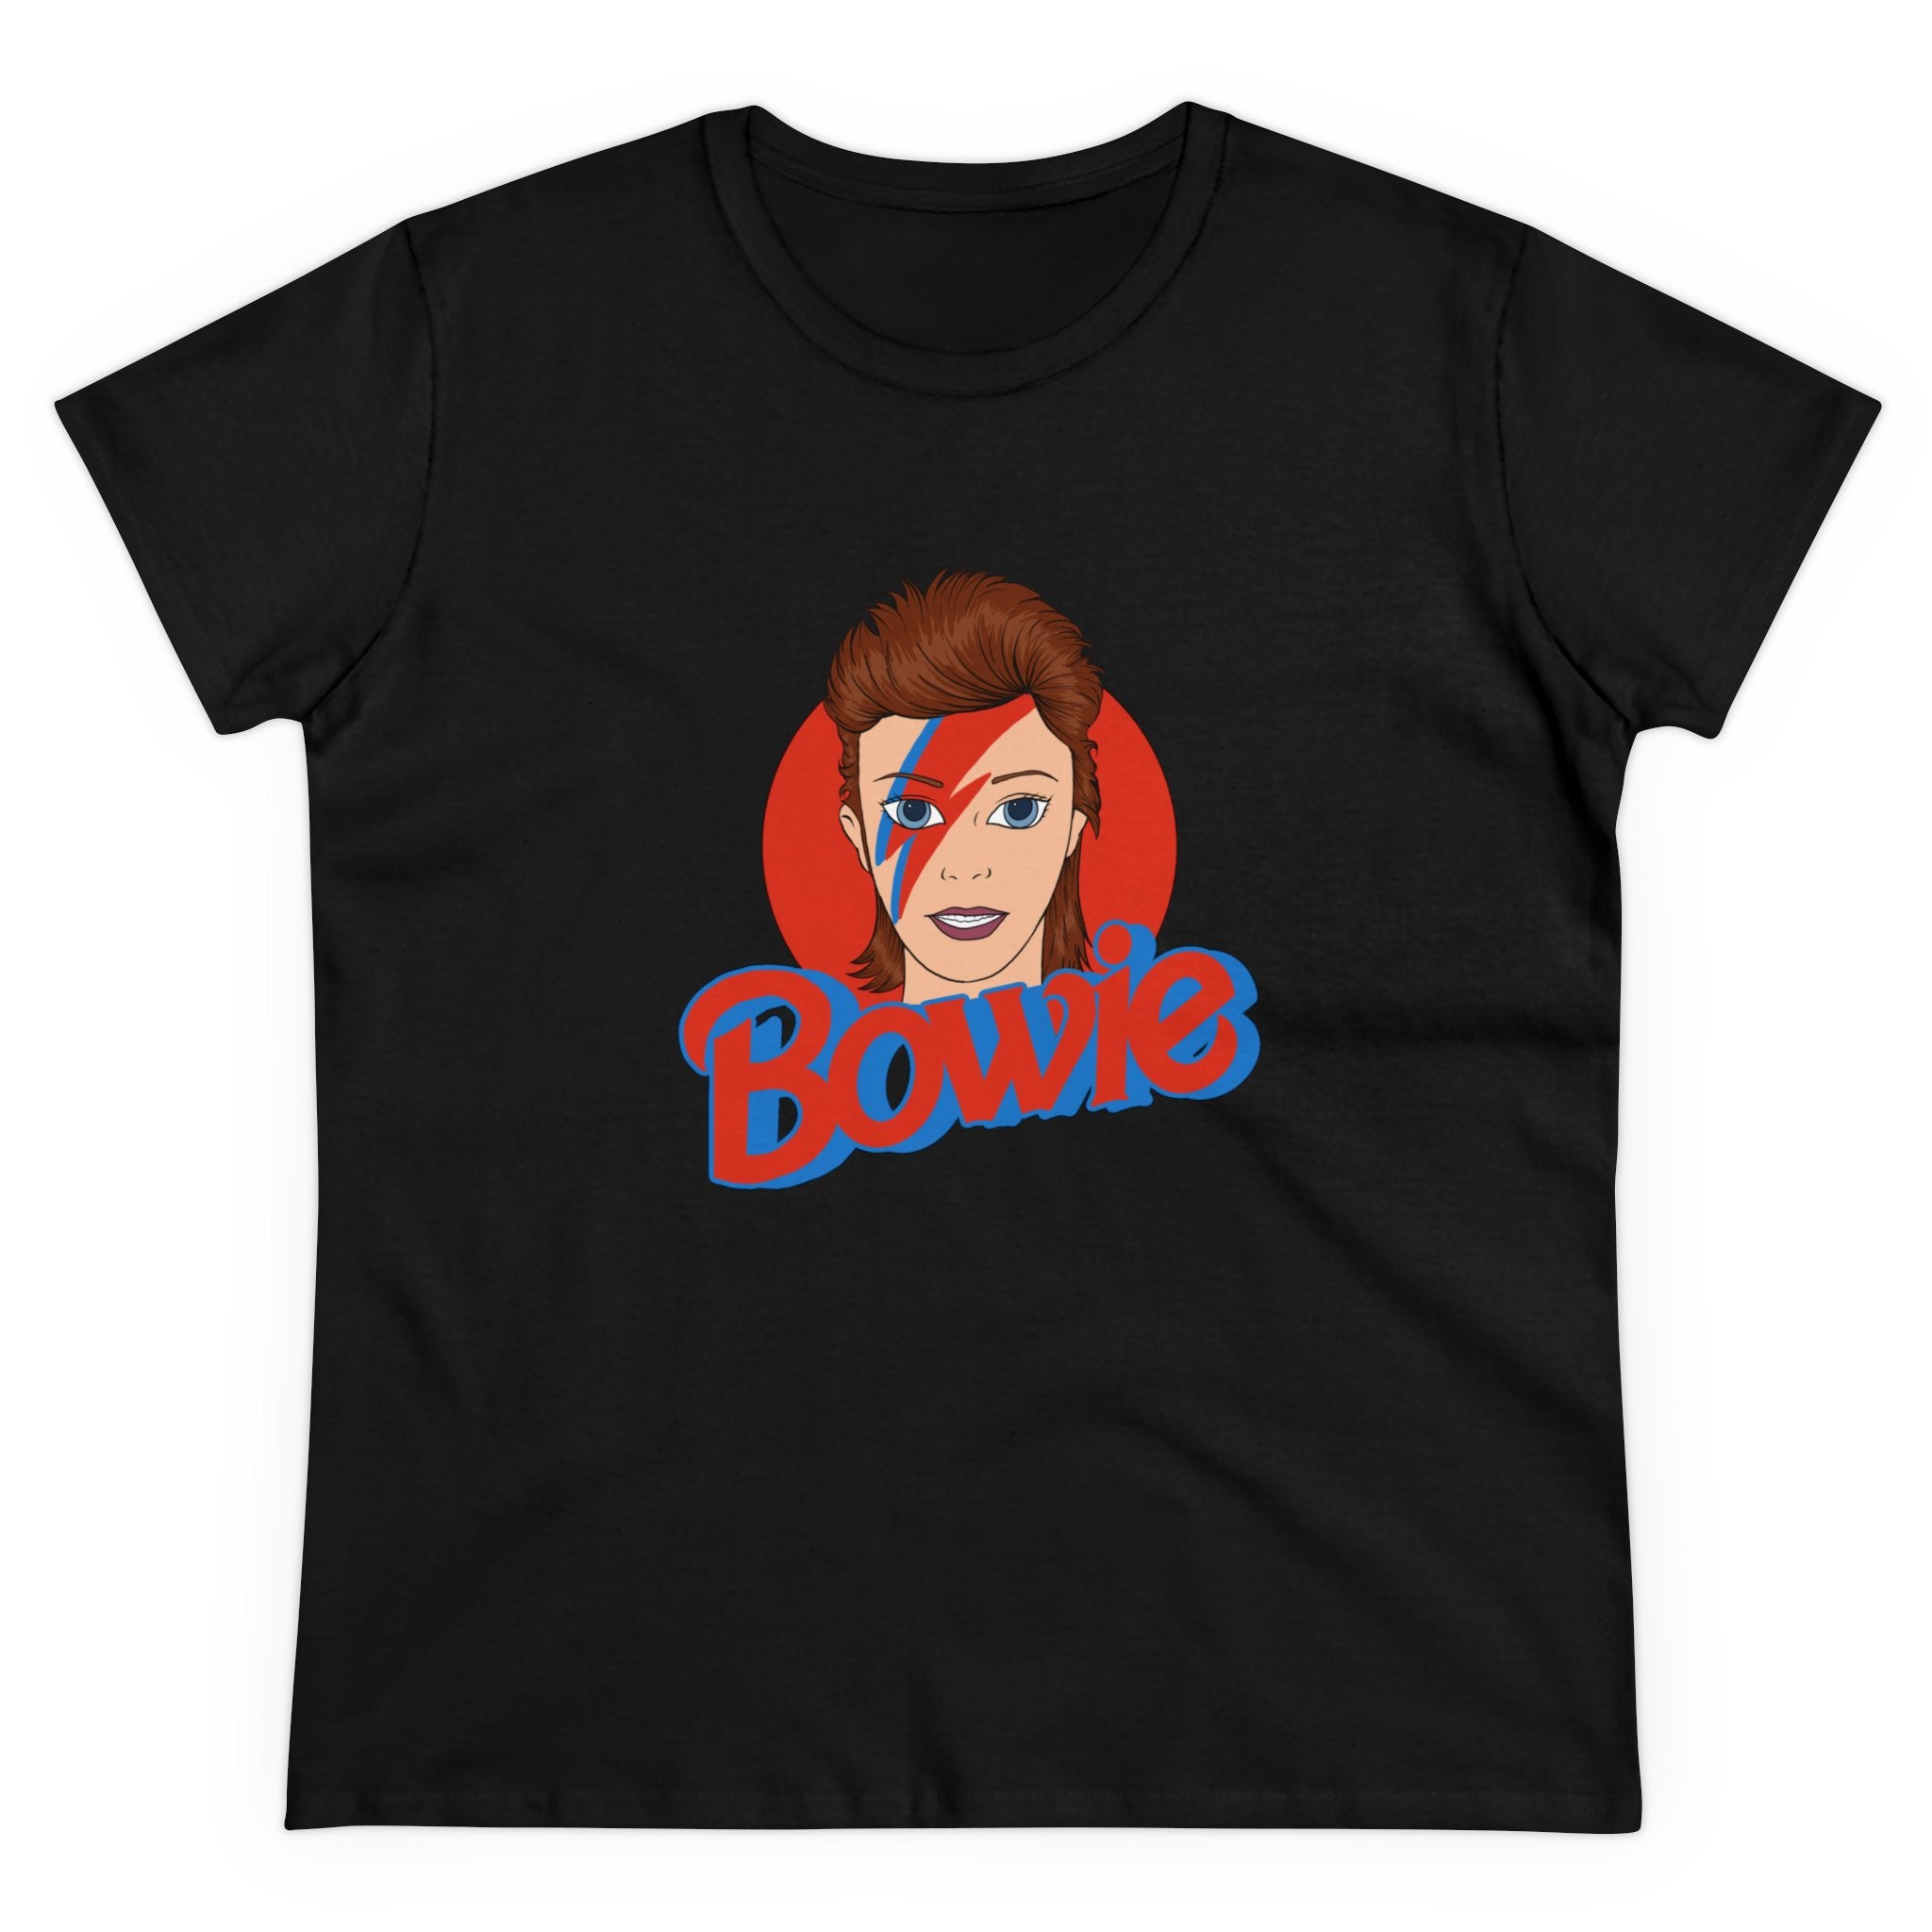 Bowie - Women's Tee